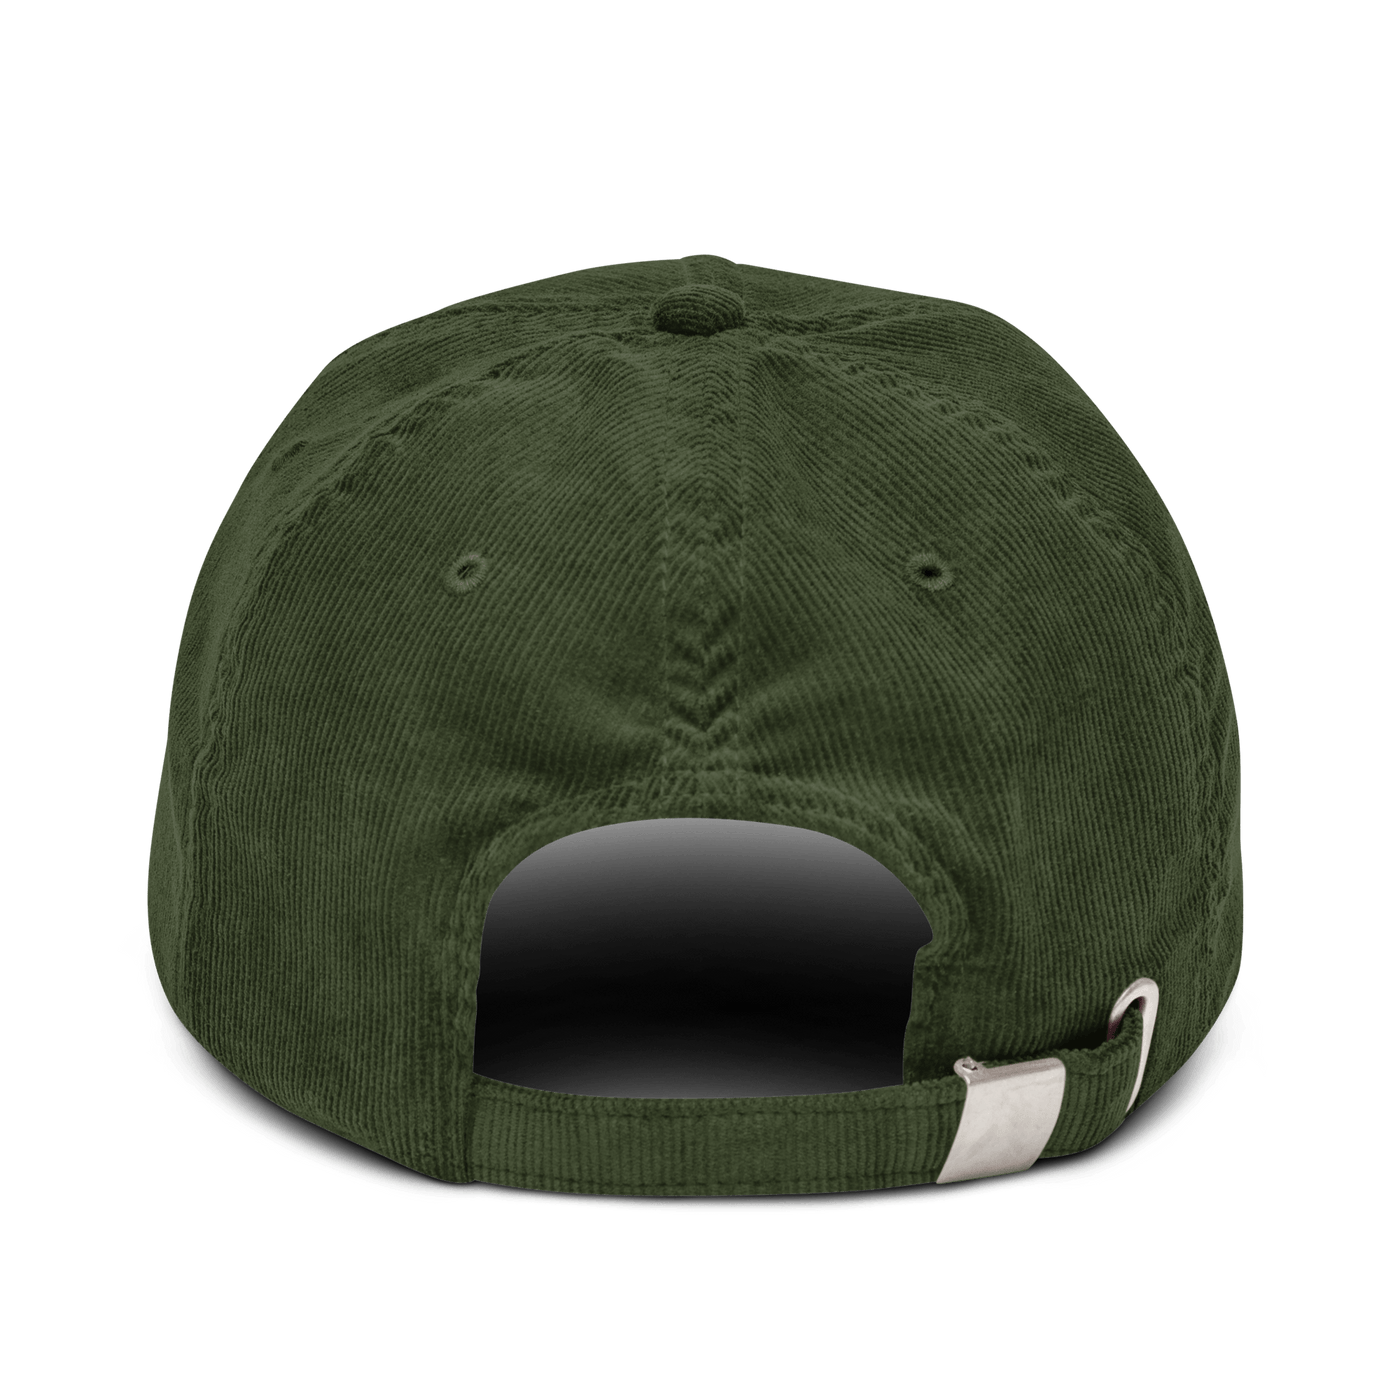 Sauerkraut Corduroy hat - Dark Olive - - Just Another Cap Store